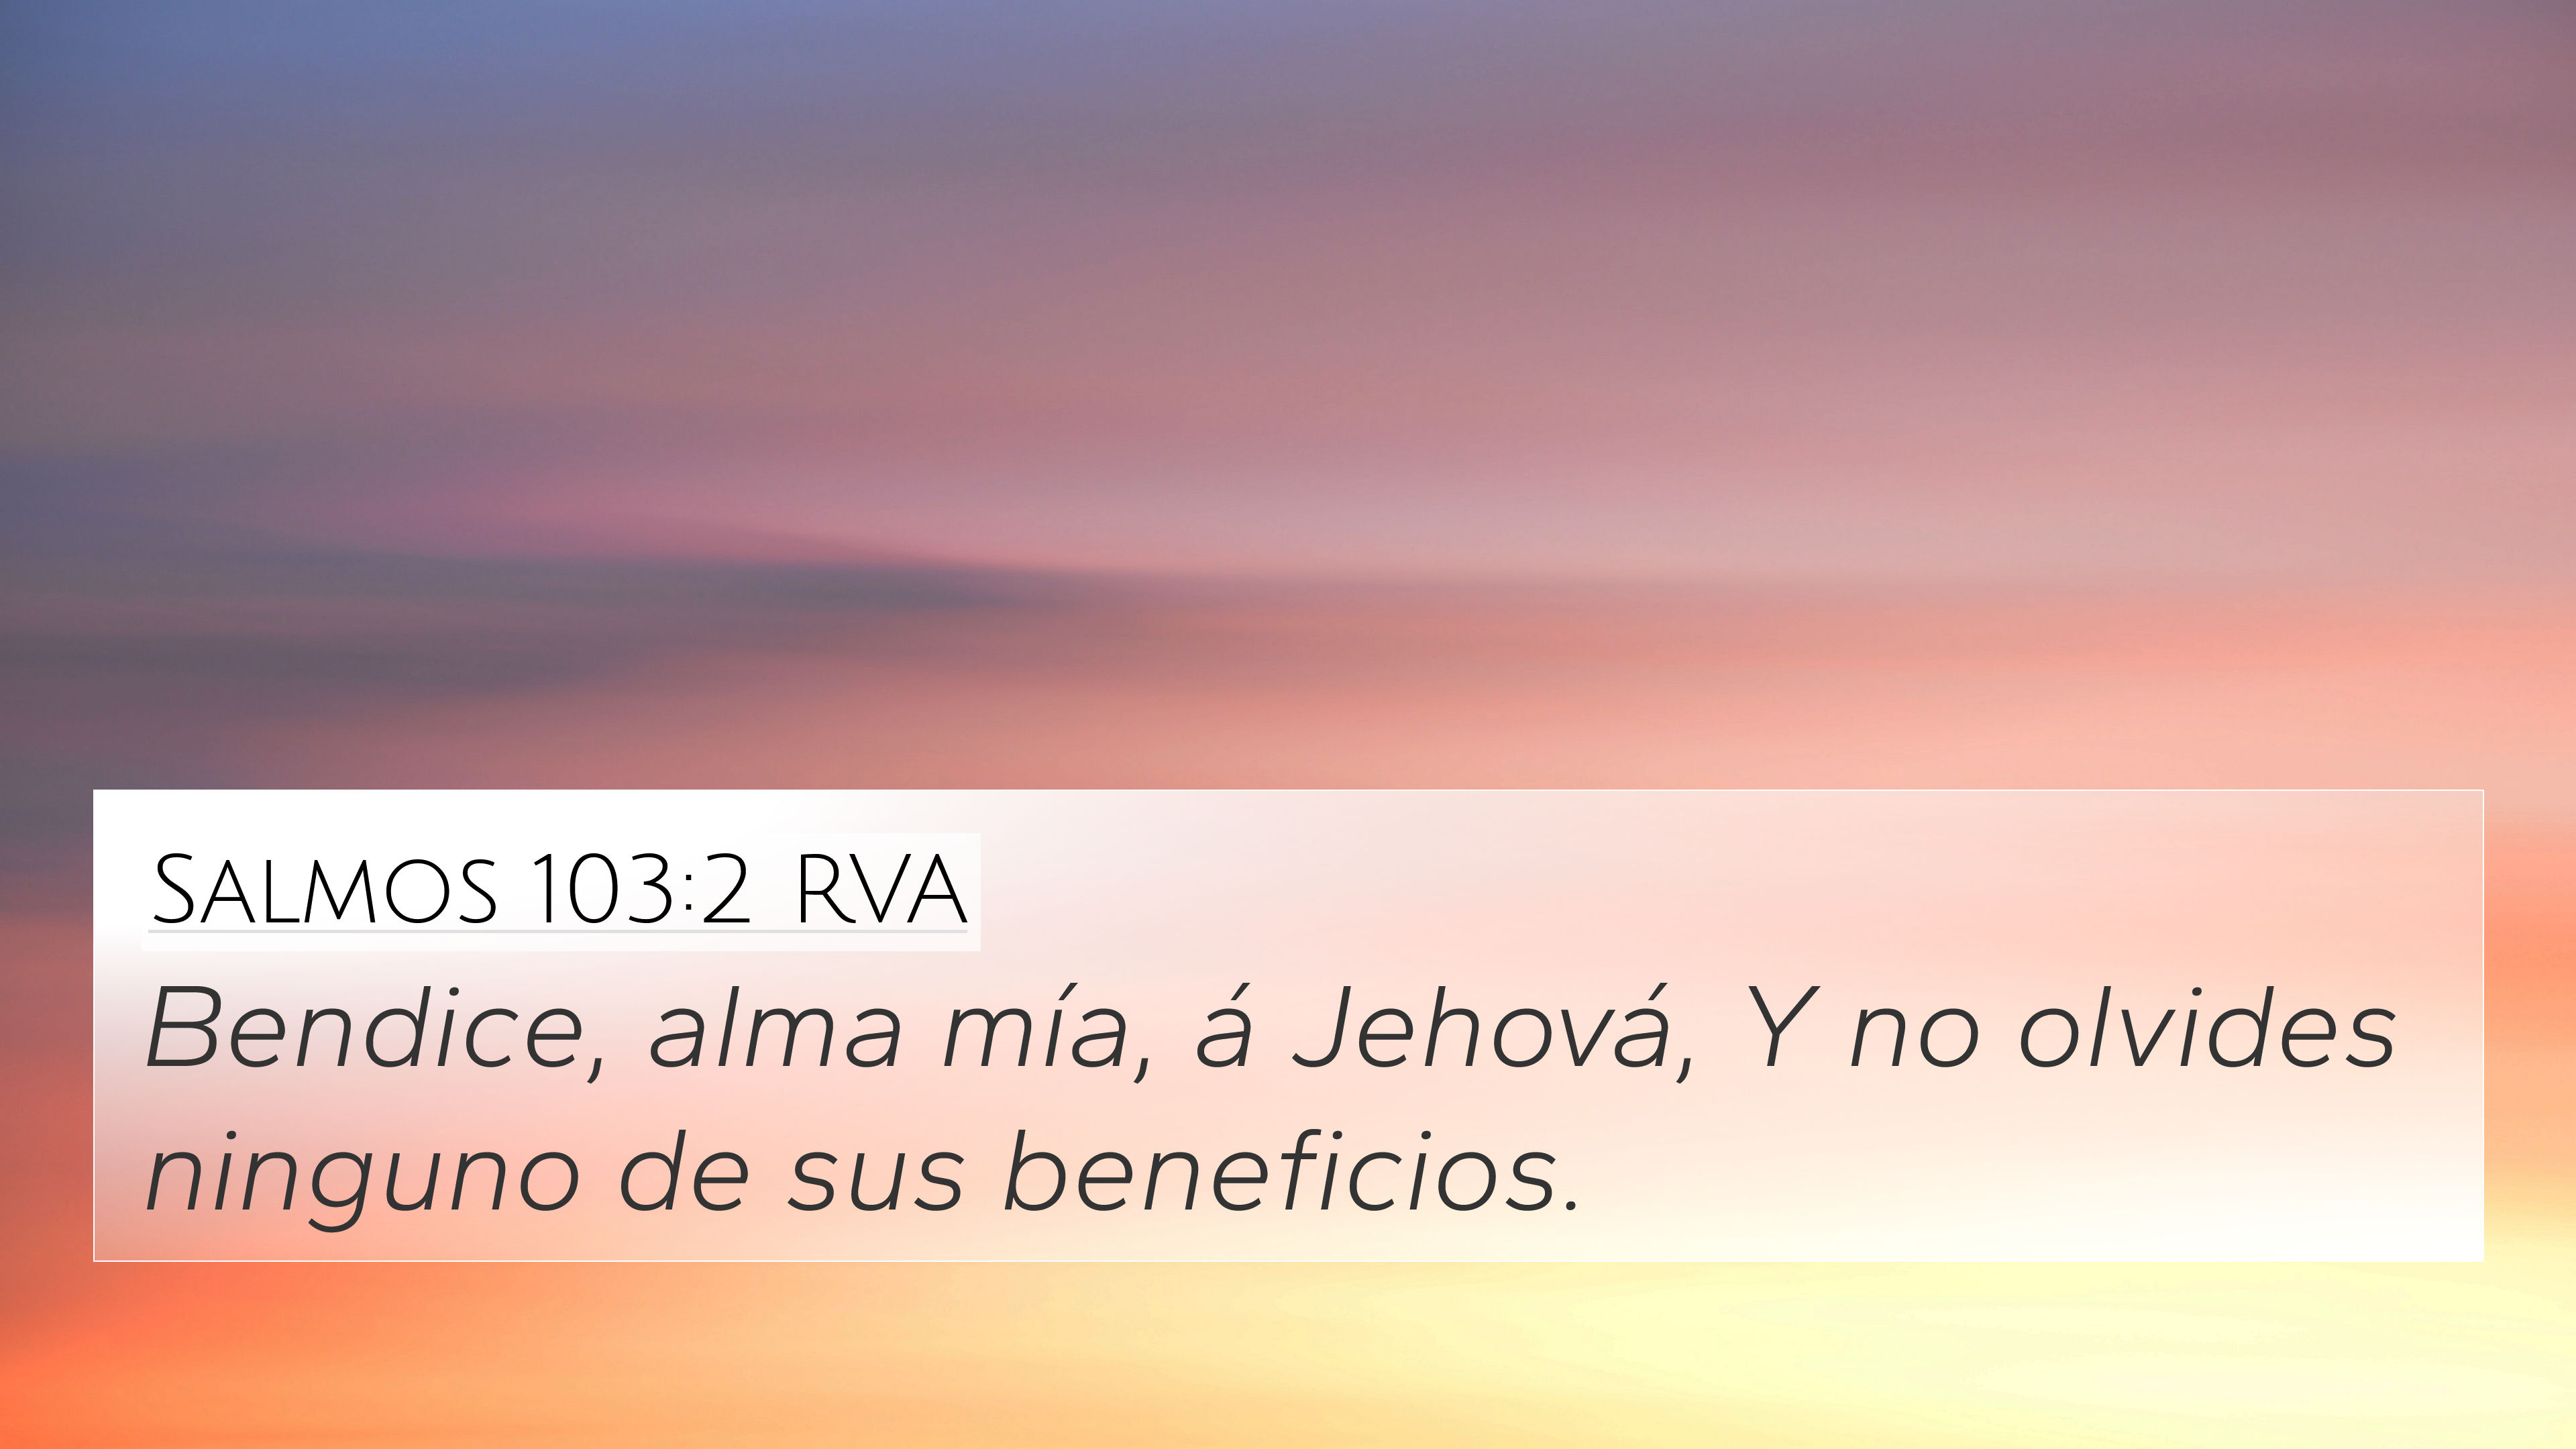 Salmos 103:2 RVA 4K Wallpaper - Bendice, alma mía, á Jehová, Y no olvides